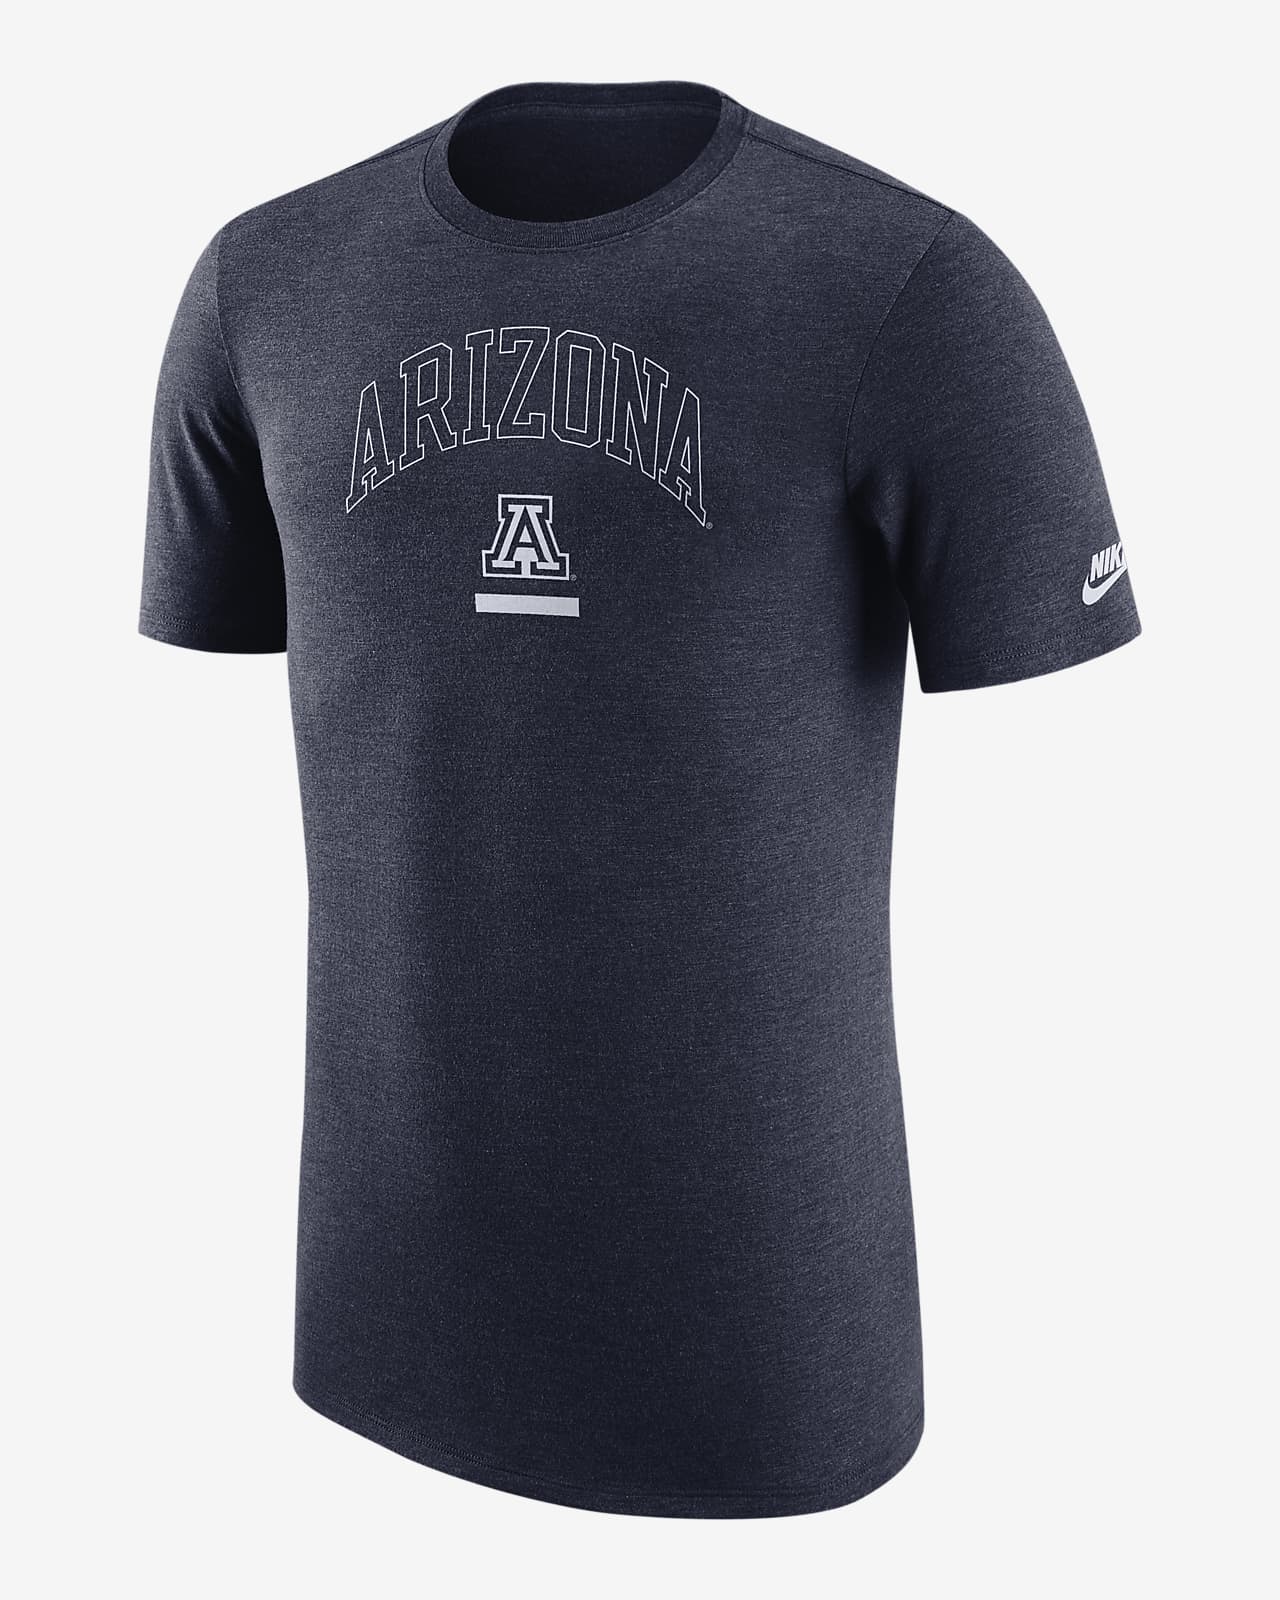 Nike College (Arizona) Men's Graphic T-Shirt